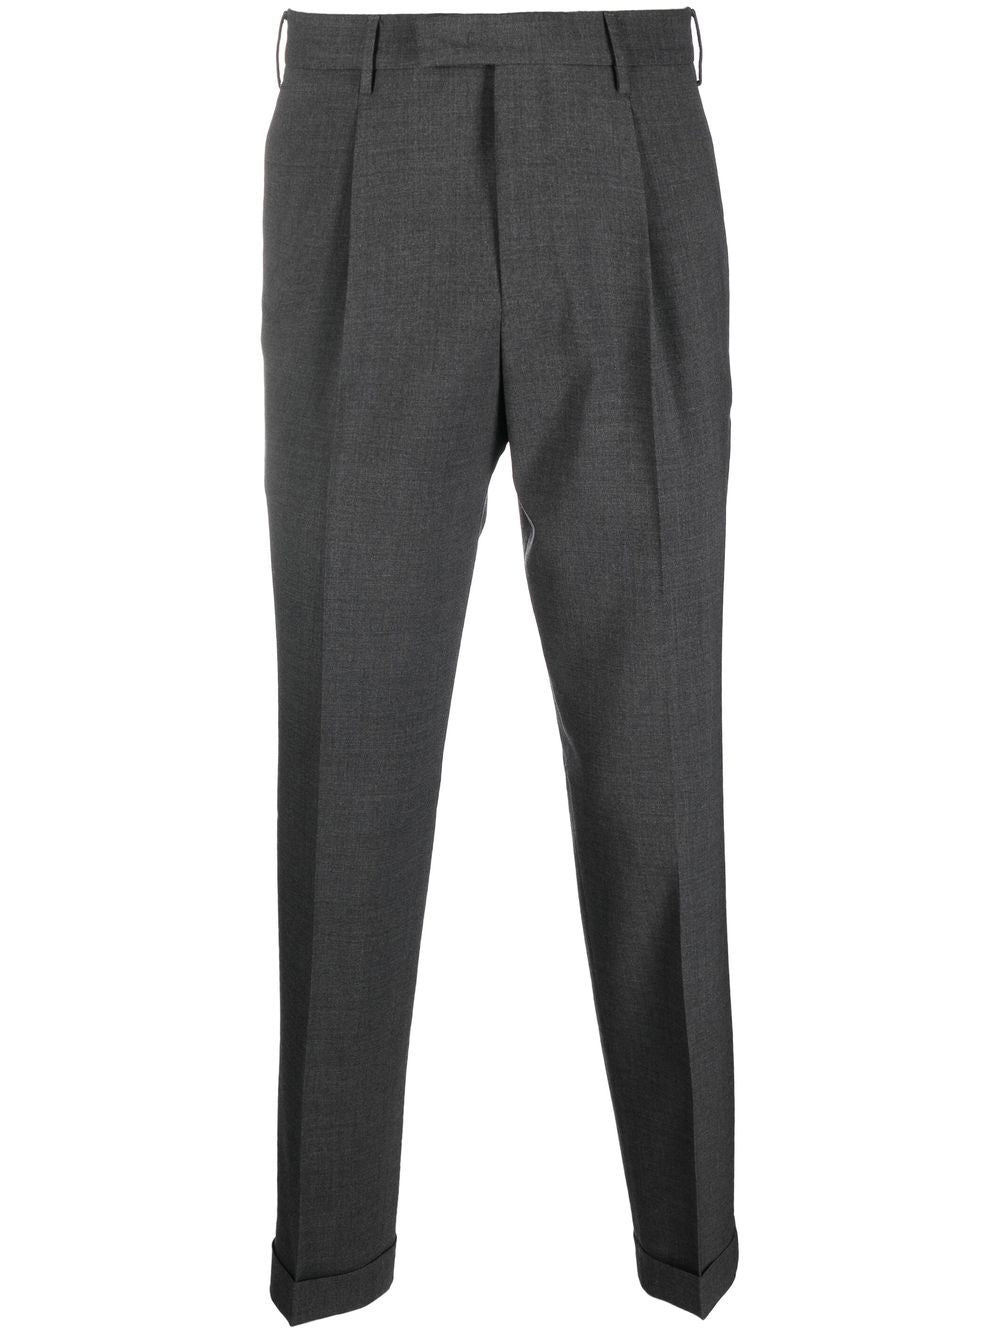 pantalone maserfit grigio scuro pences e risvolto